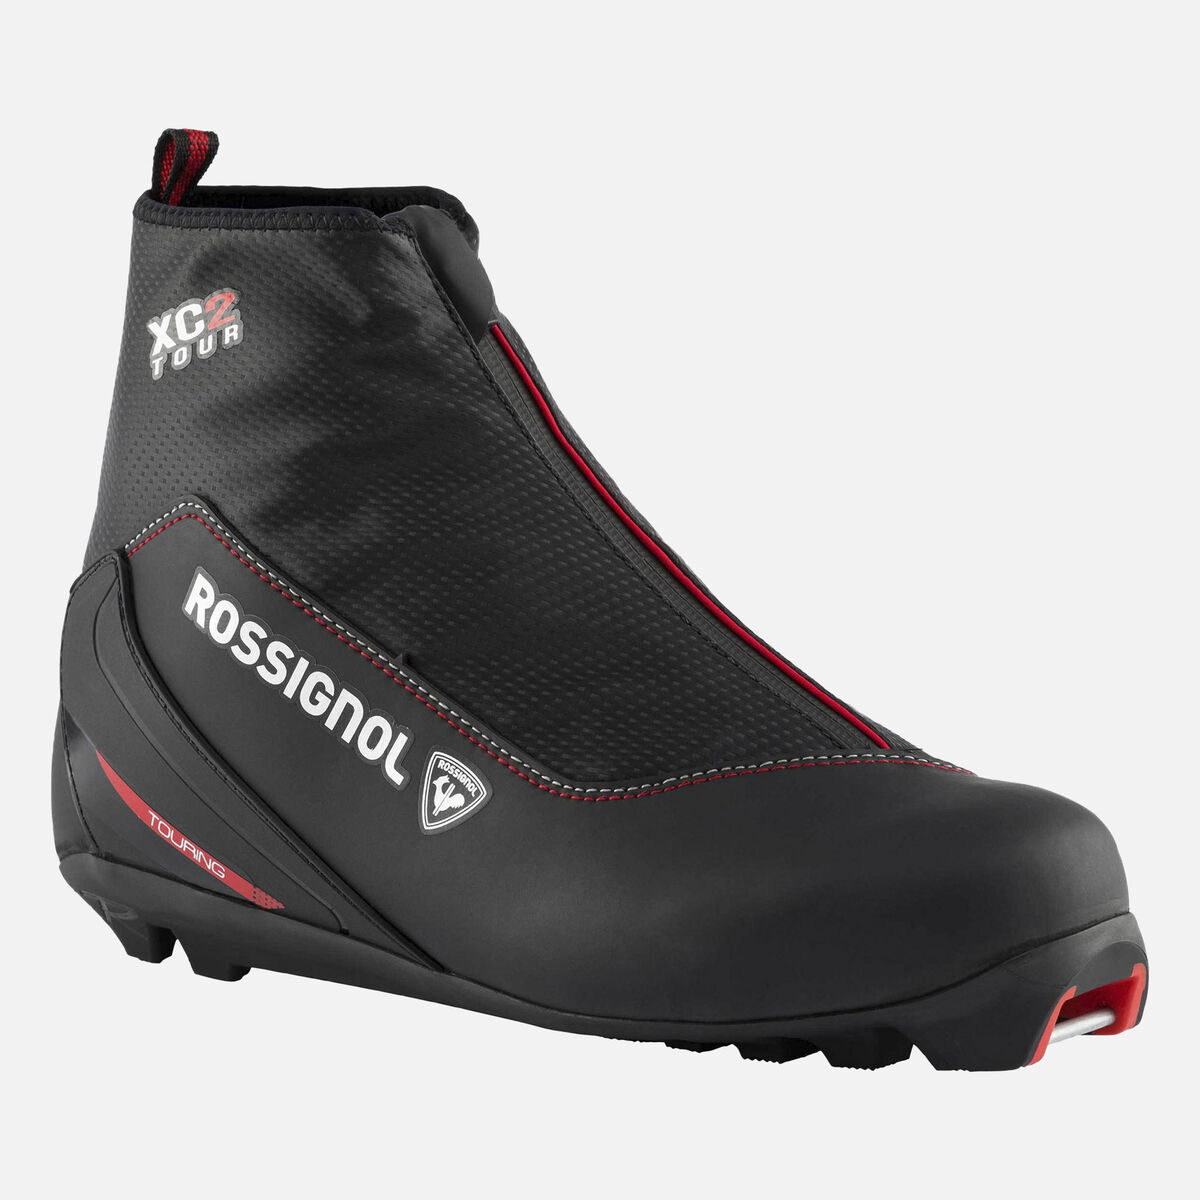 Rossignol Unisex Nordic TOURING Boots XC-2 Multicolor